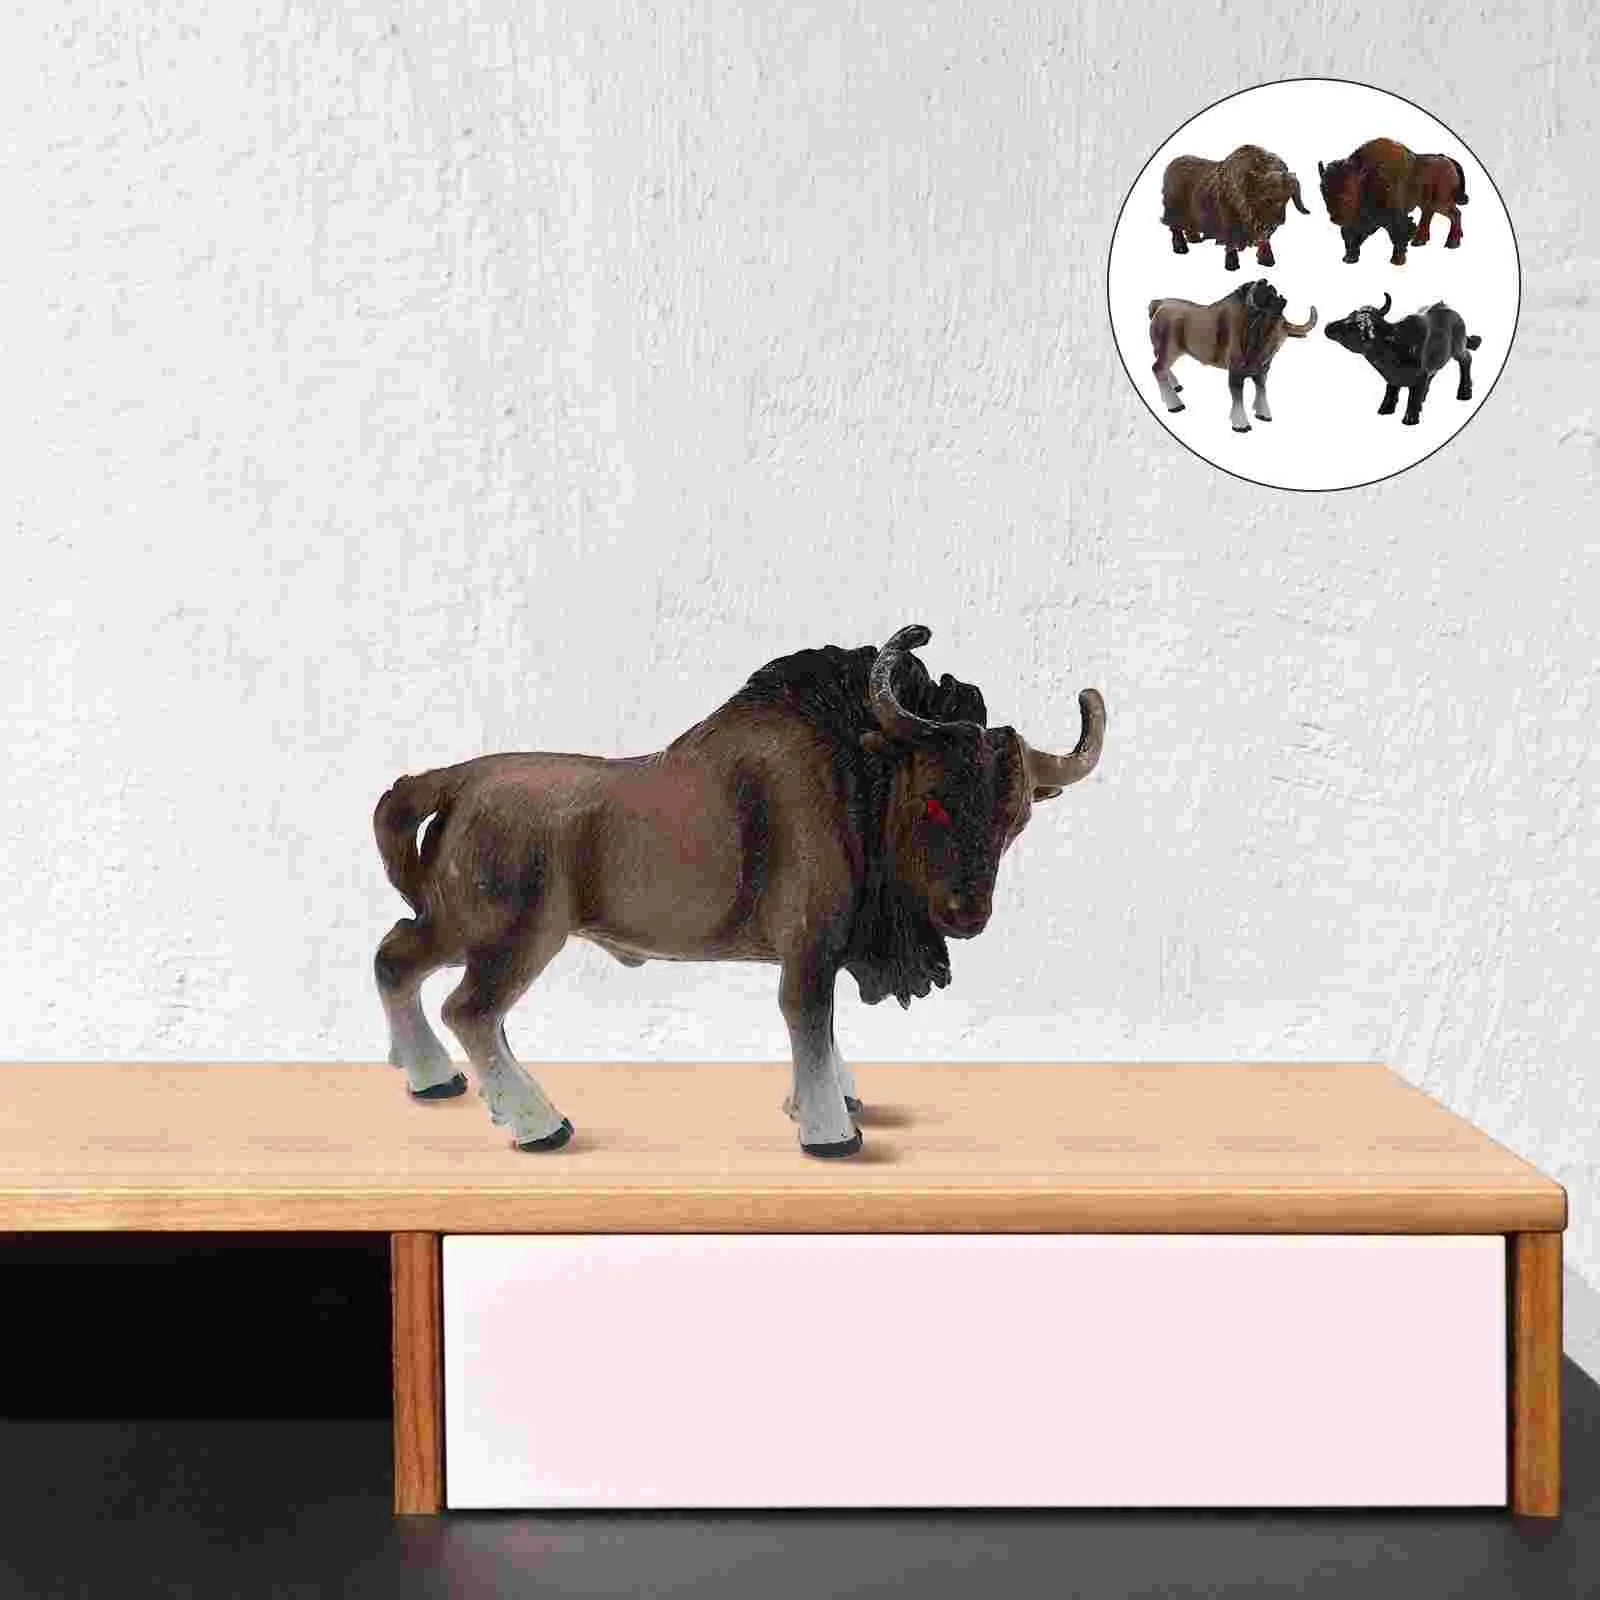 

4 шт., фигурки коров, анималистические игрушки, фигурки животных на ферме, реалистичные пластиковые модели крупного рогатого скота